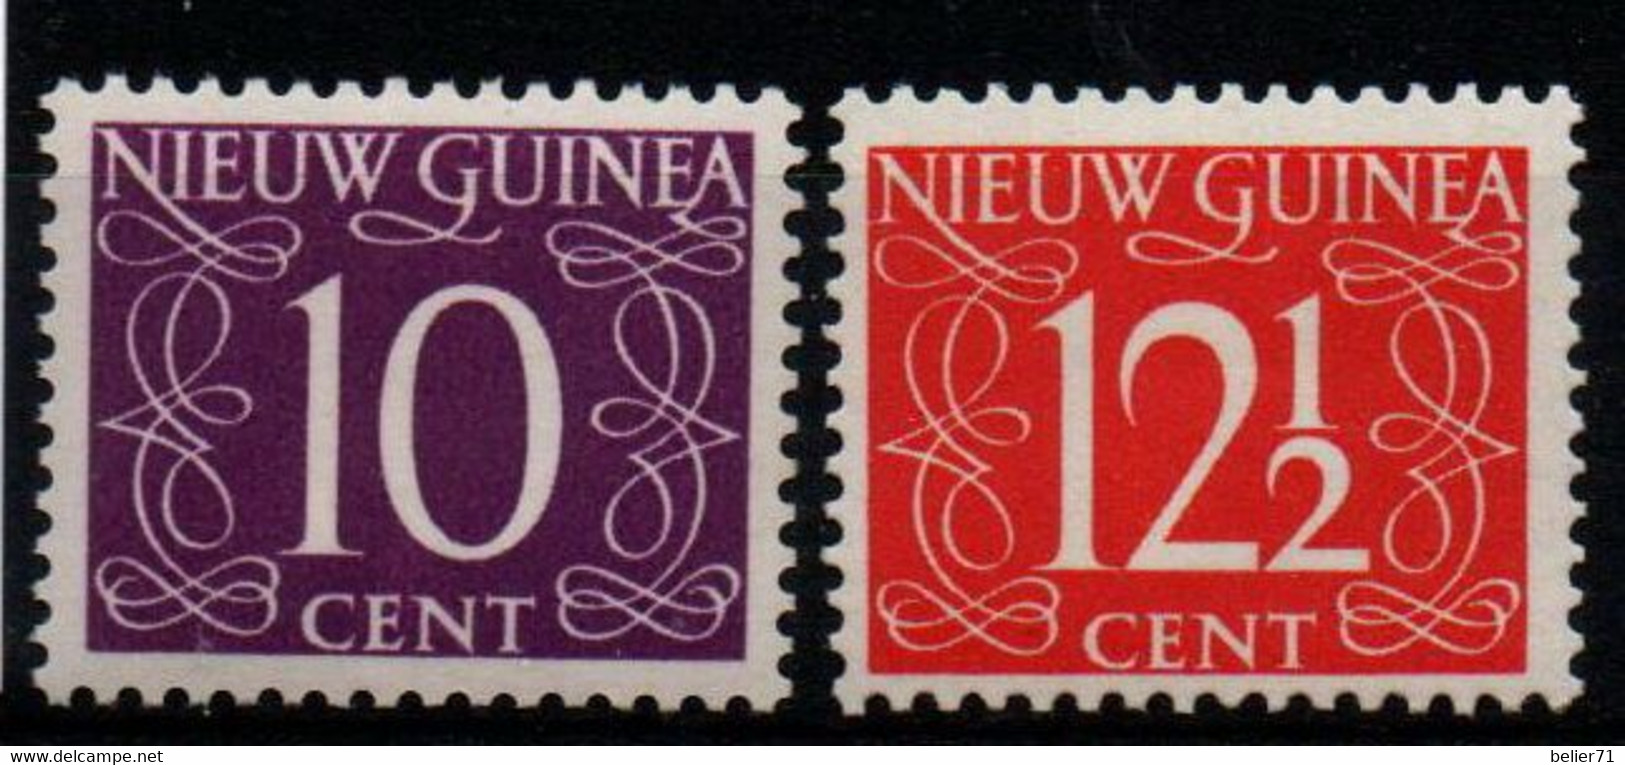 Pays Bas : Nouvelle Guinée N° 8 Et 9 X Neufs Avec Traces De Charnière Année 1950 - Niederländisch-Neuguinea